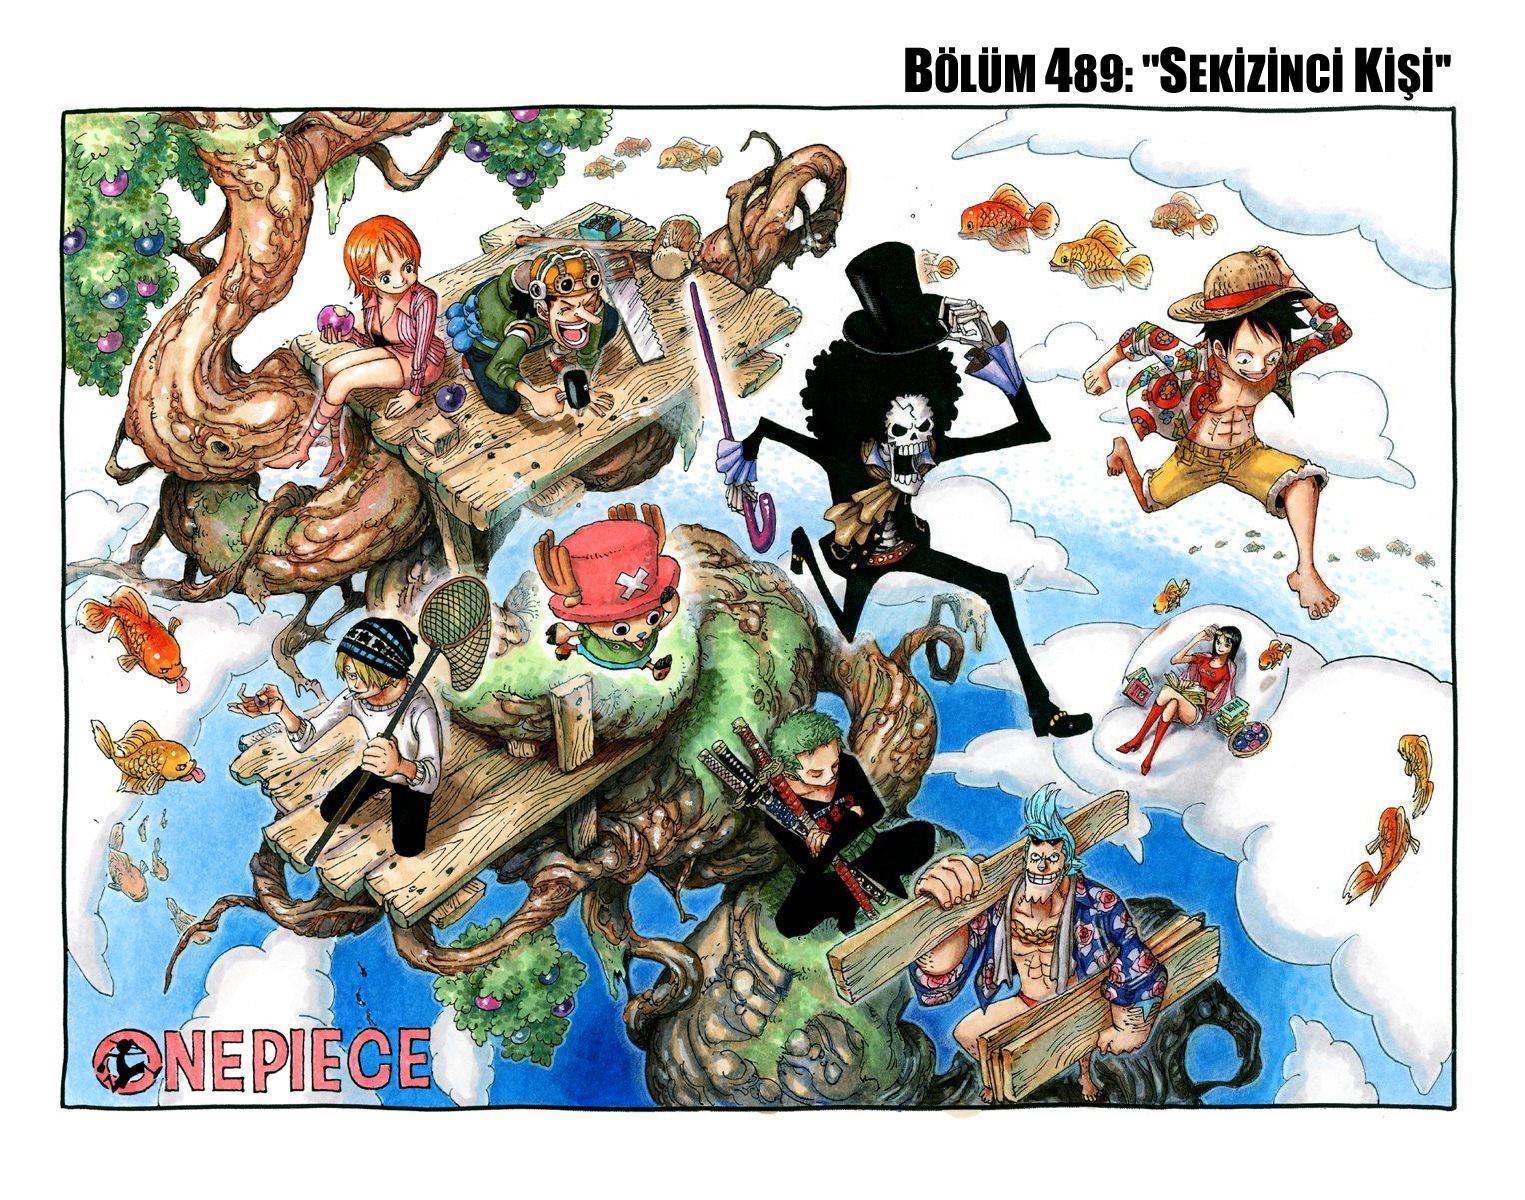 One Piece [Renkli] mangasının 0489 bölümünün 2. sayfasını okuyorsunuz.